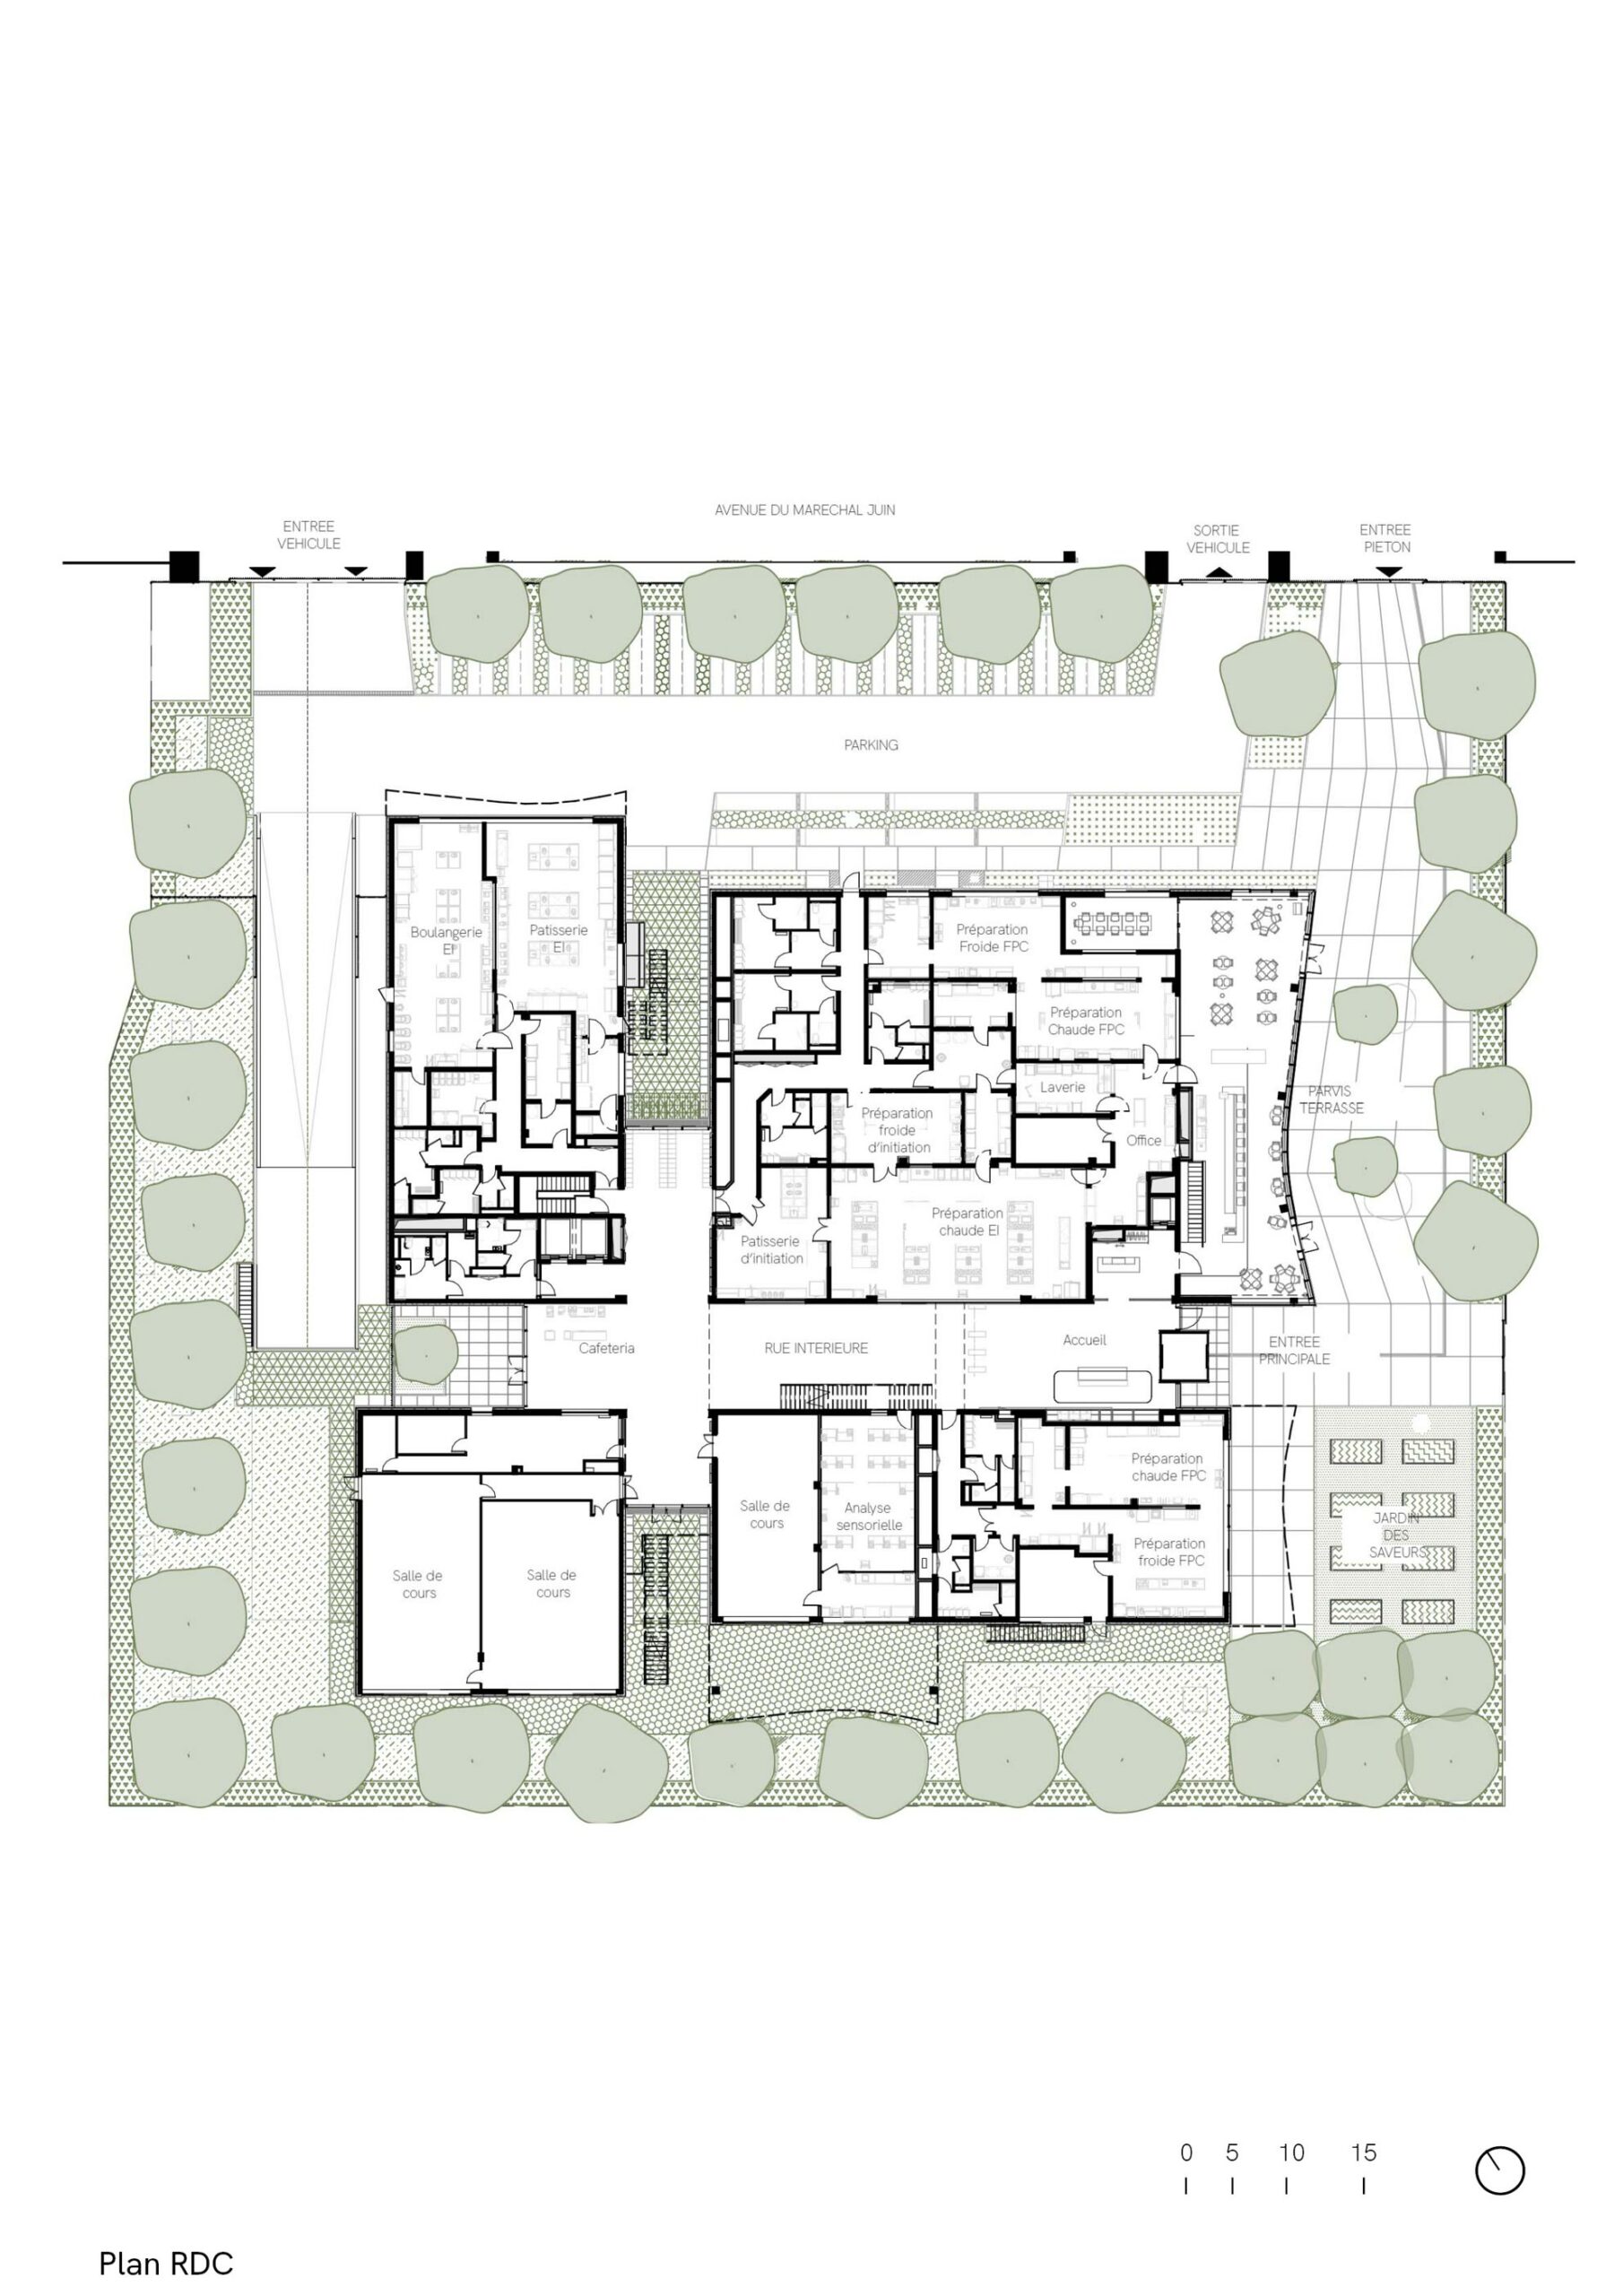 Ecole Ducasse – Paris Campus, Meudon, R+1 blueprint